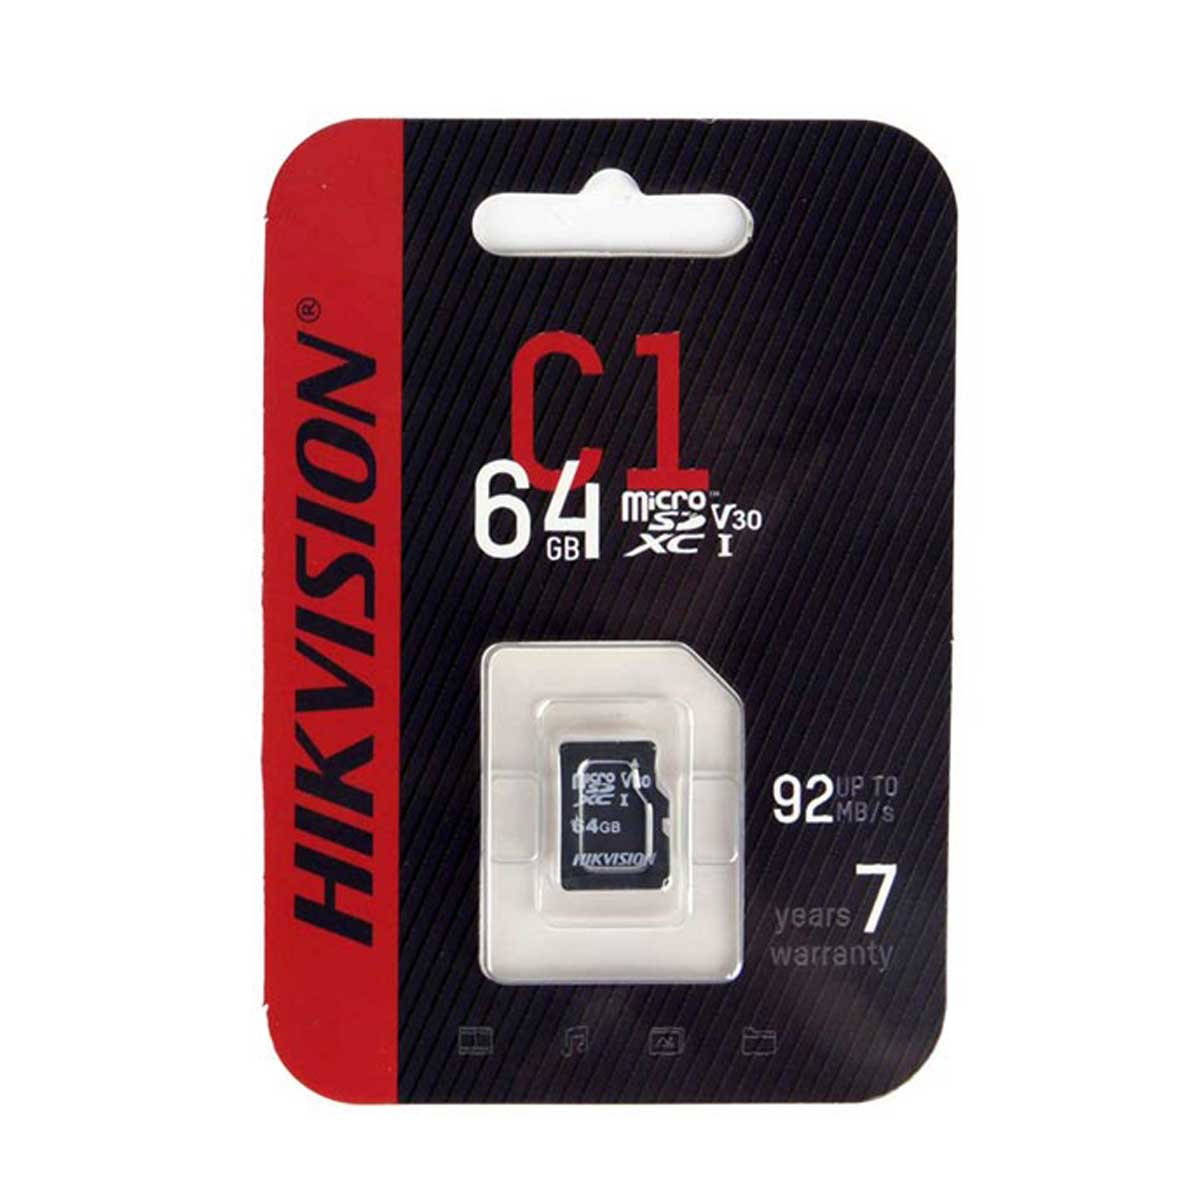  Thẻ nhớ Hikvision HS-TF-C1(STD)/64G/Adapter 64GB, tốc độ đọc 92MB/s, tốc độ ghi 30MB/s 